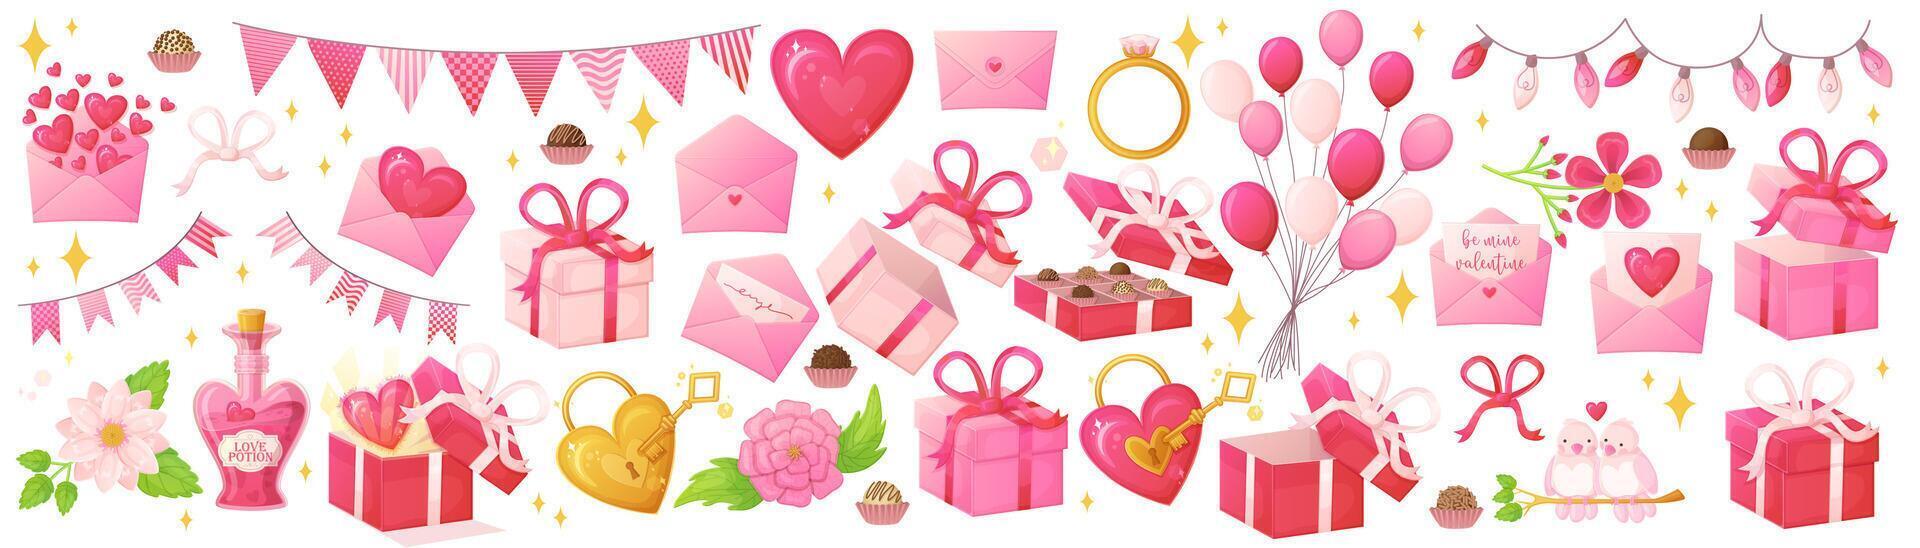 rosa valentinstag objekte gesetzt. romantische dekorationssymbole im realistischen cartoon-stil. vektor